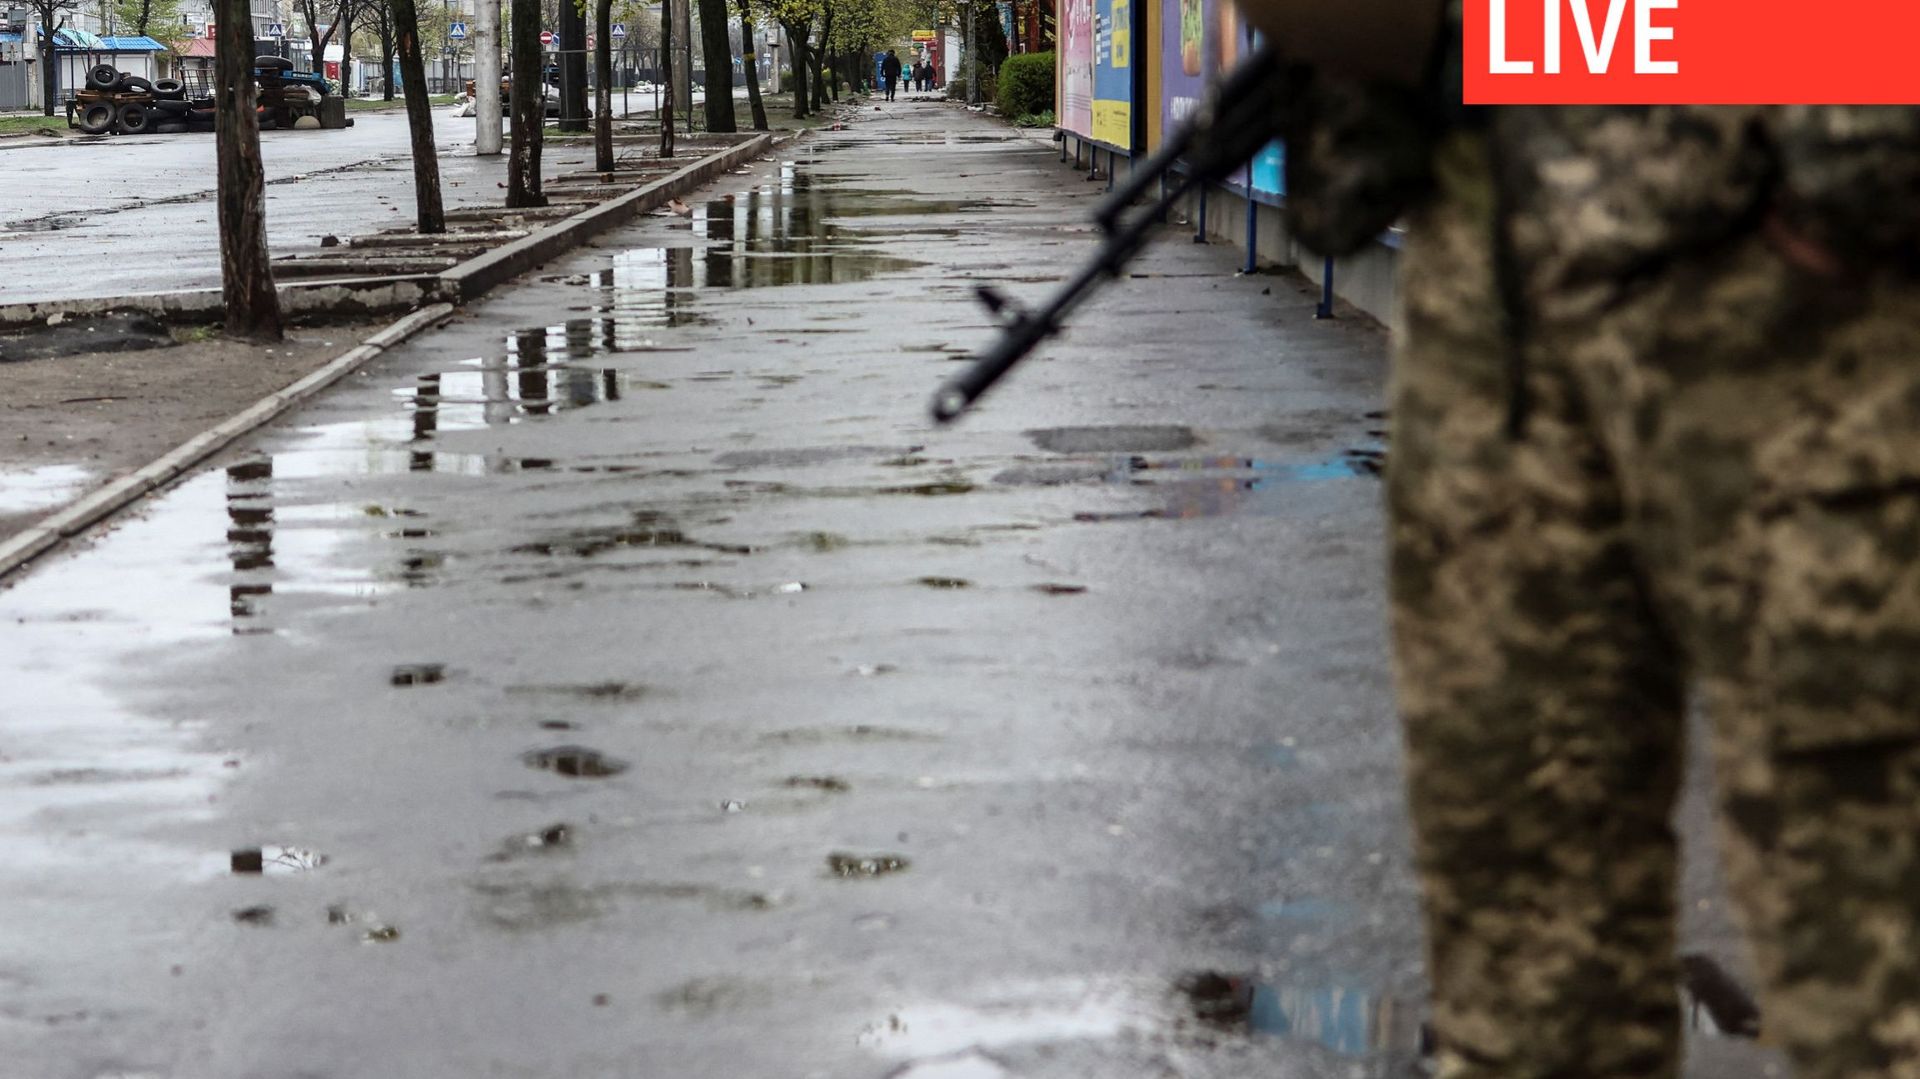 Guerre en Ukraine : cessez-le-feu annoncé à Marioupol, Poutine "responsable de crimes de guerre" selon Scholz... Revivez la journée du mardi 19 avril